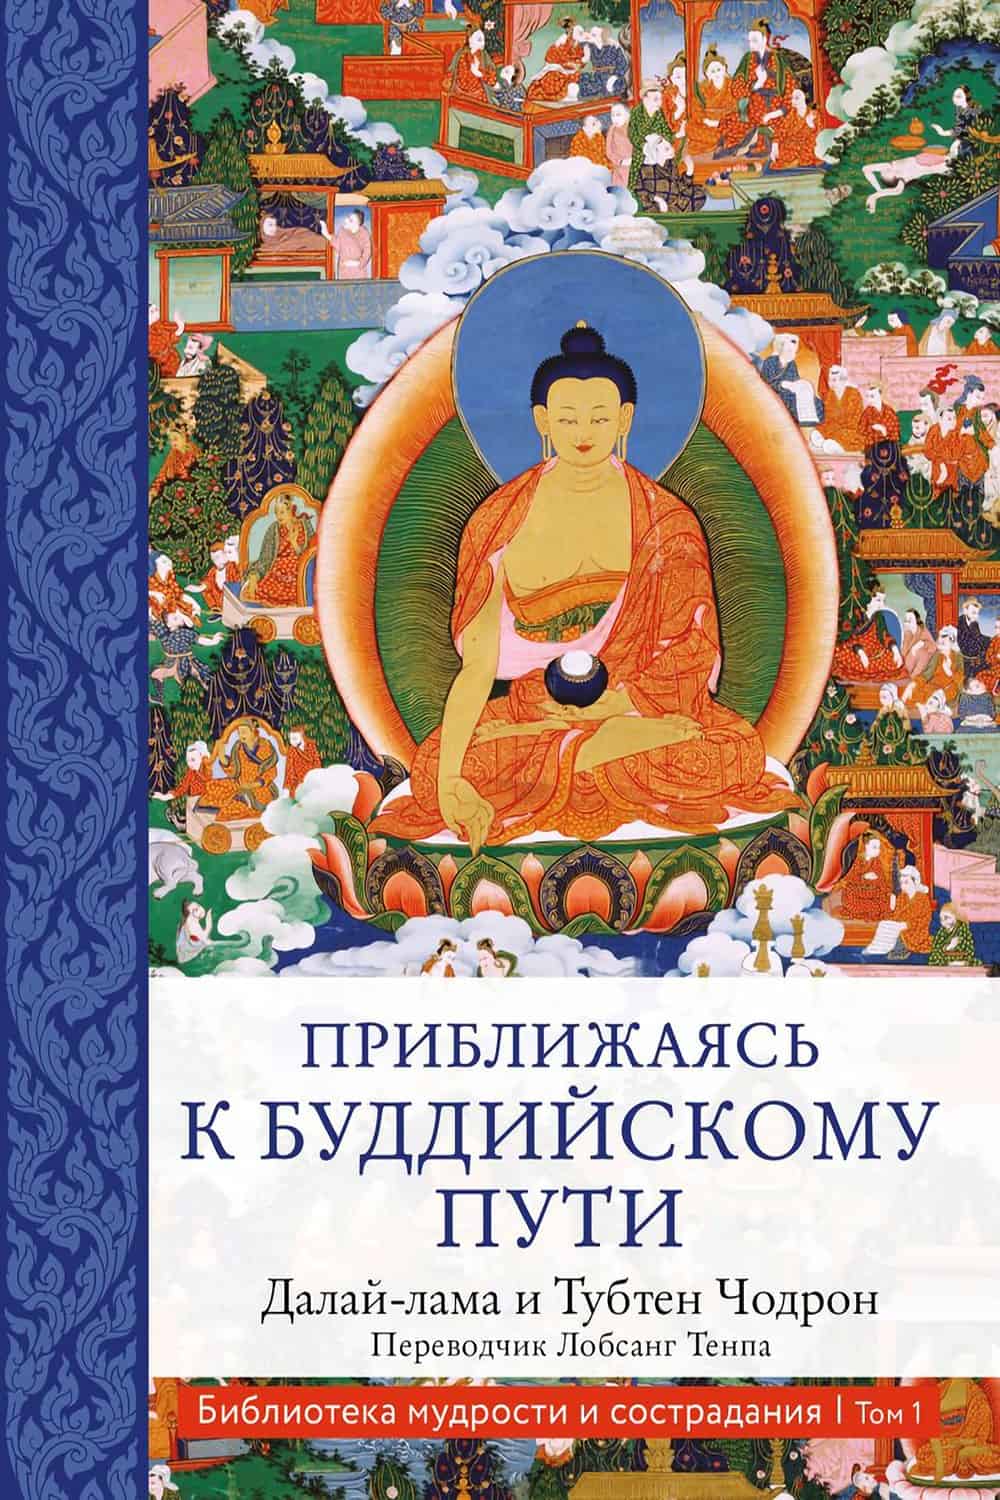 Okładka książki Zbliżając się do buddyjskiej ścieżki w języku rosyjskim